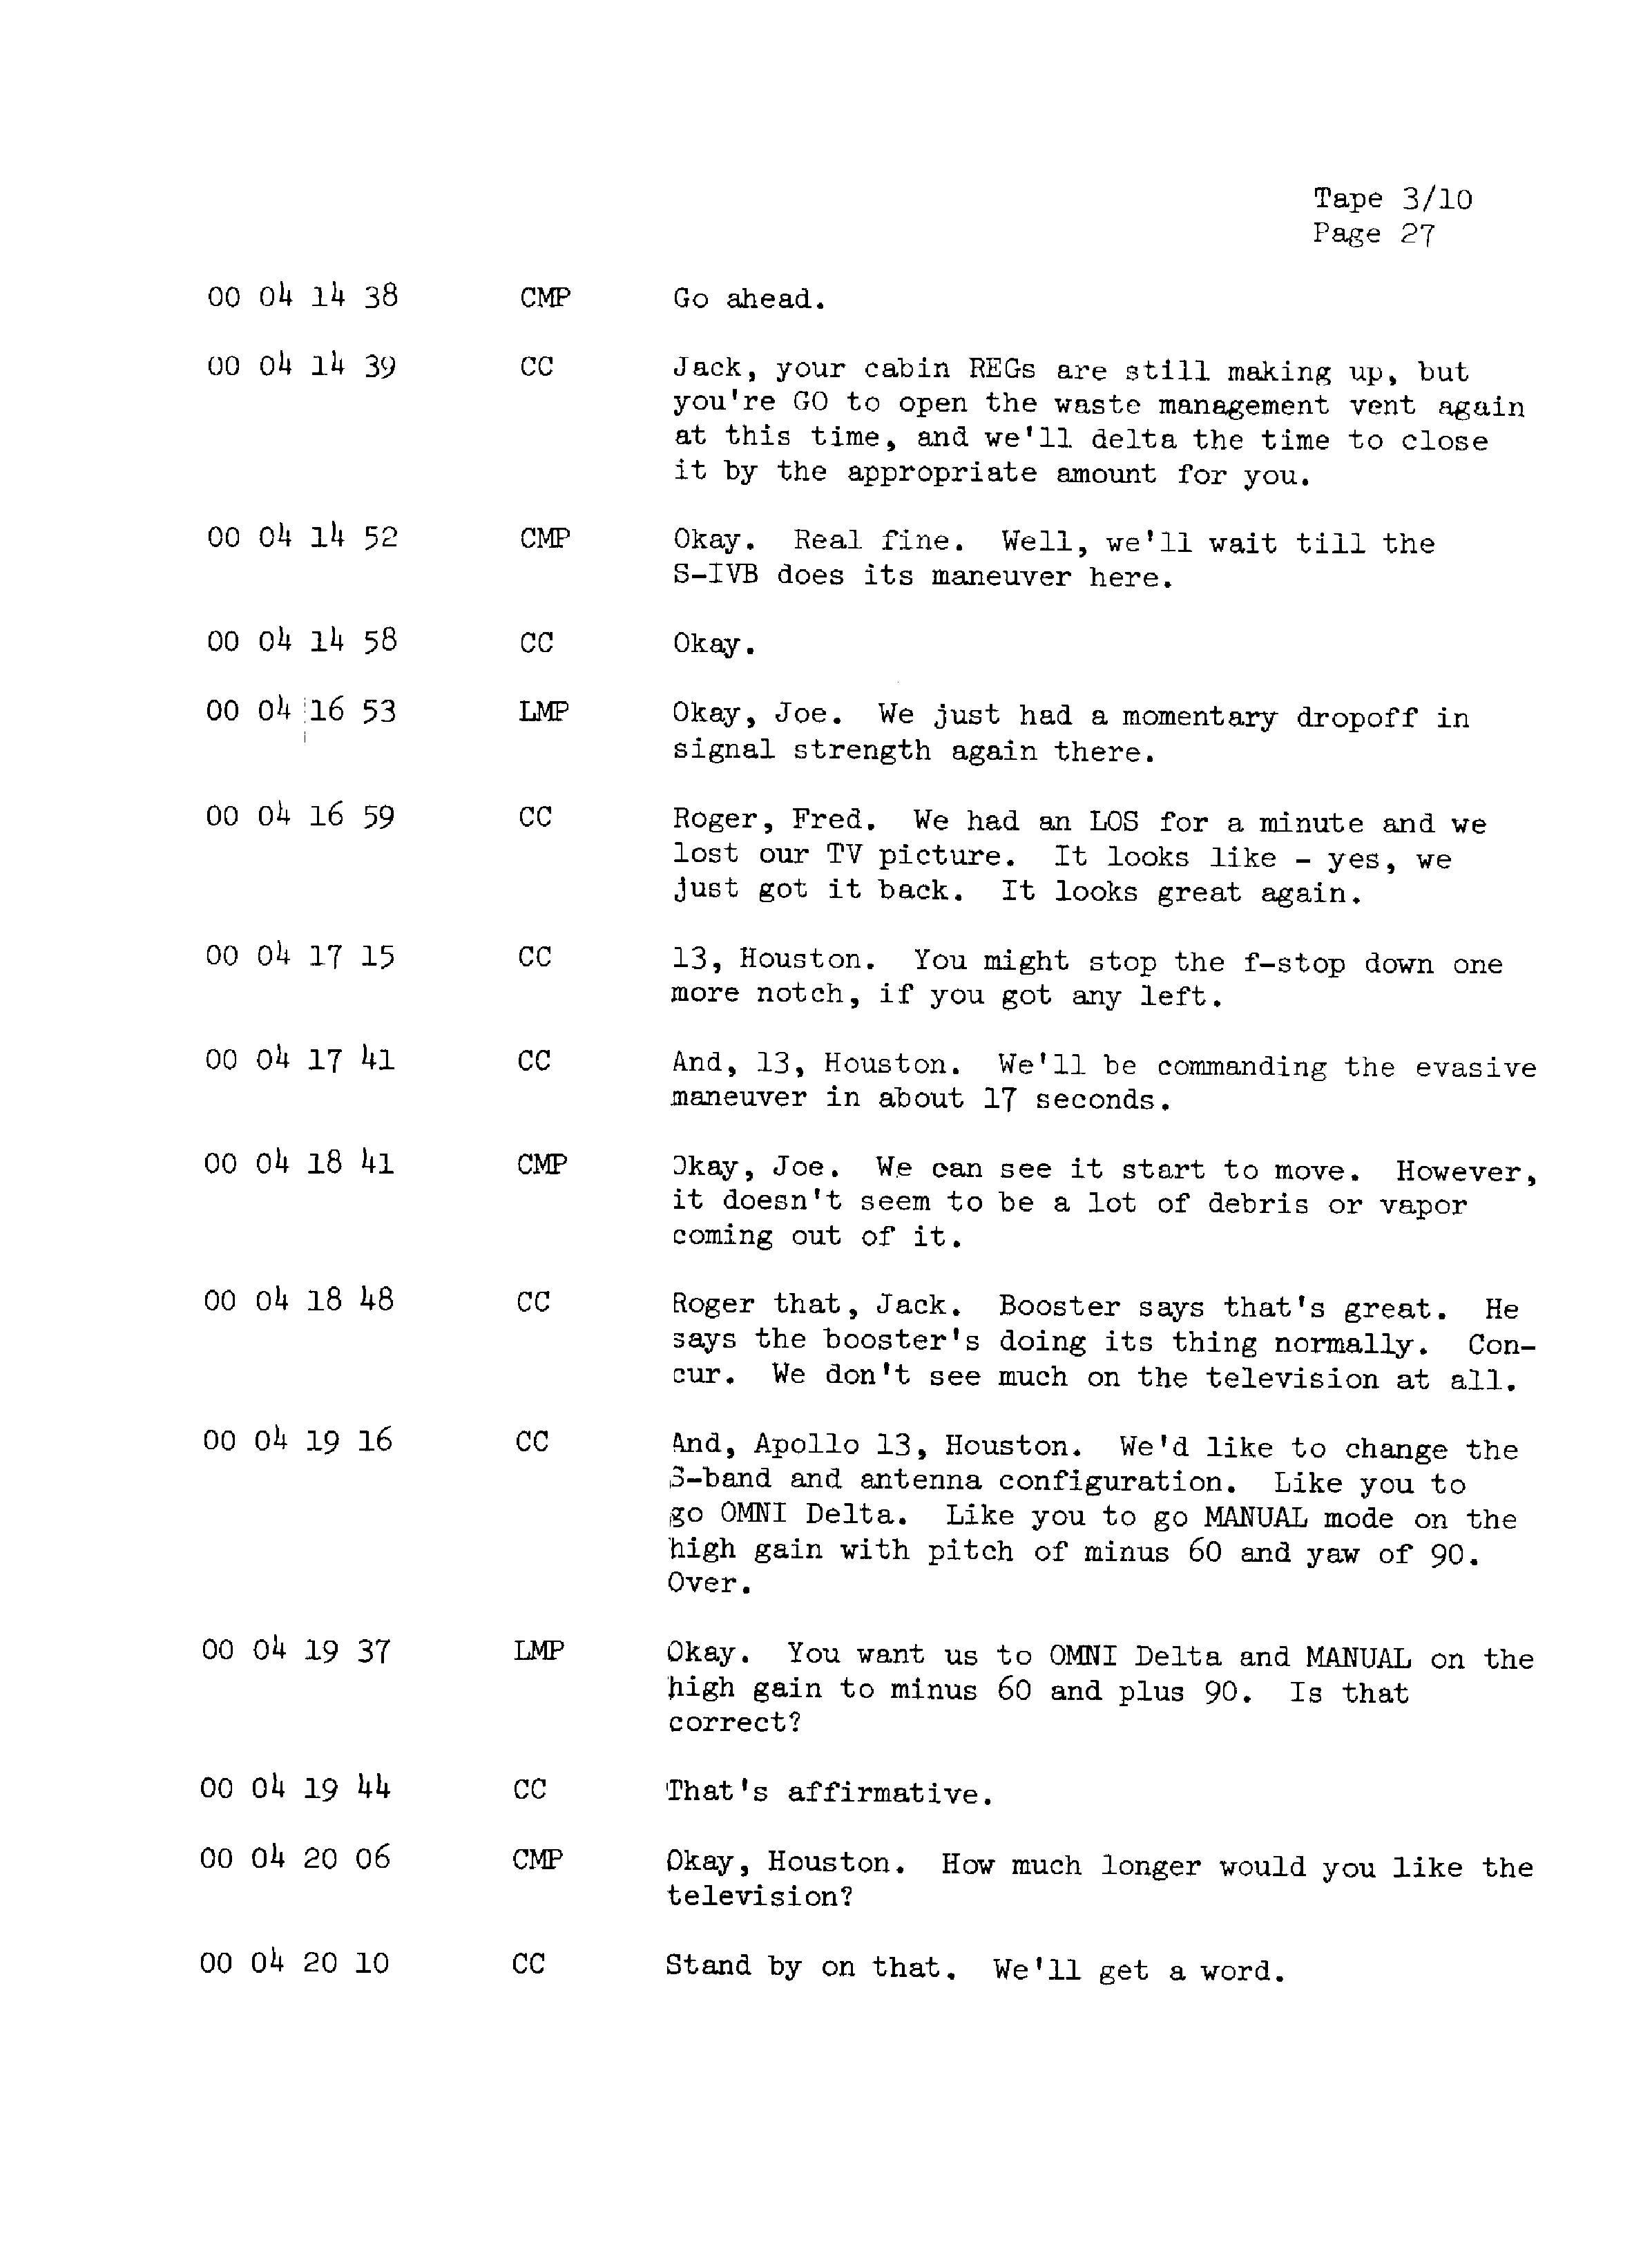 Page 34 of Apollo 13’s original transcript